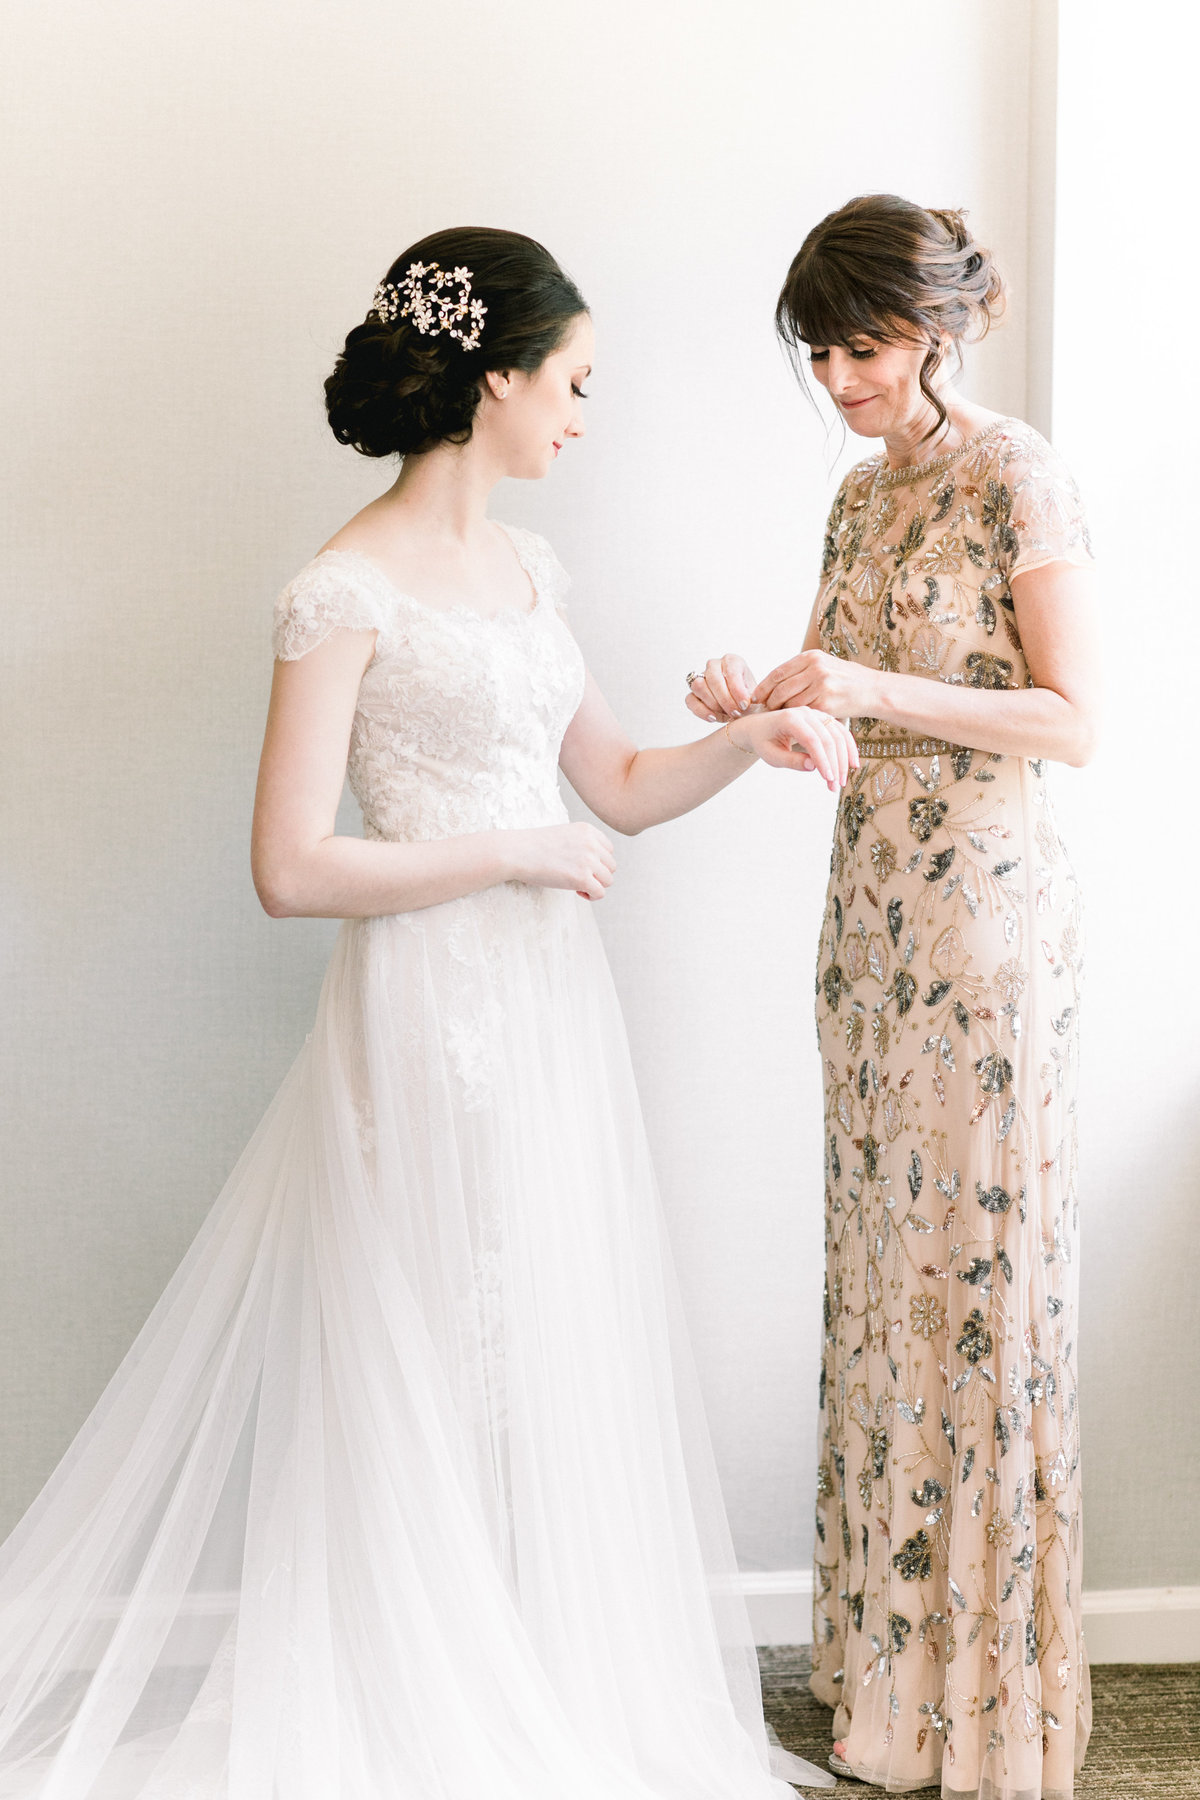 Kate & Jack_Wedding_Bride In Dress_1032